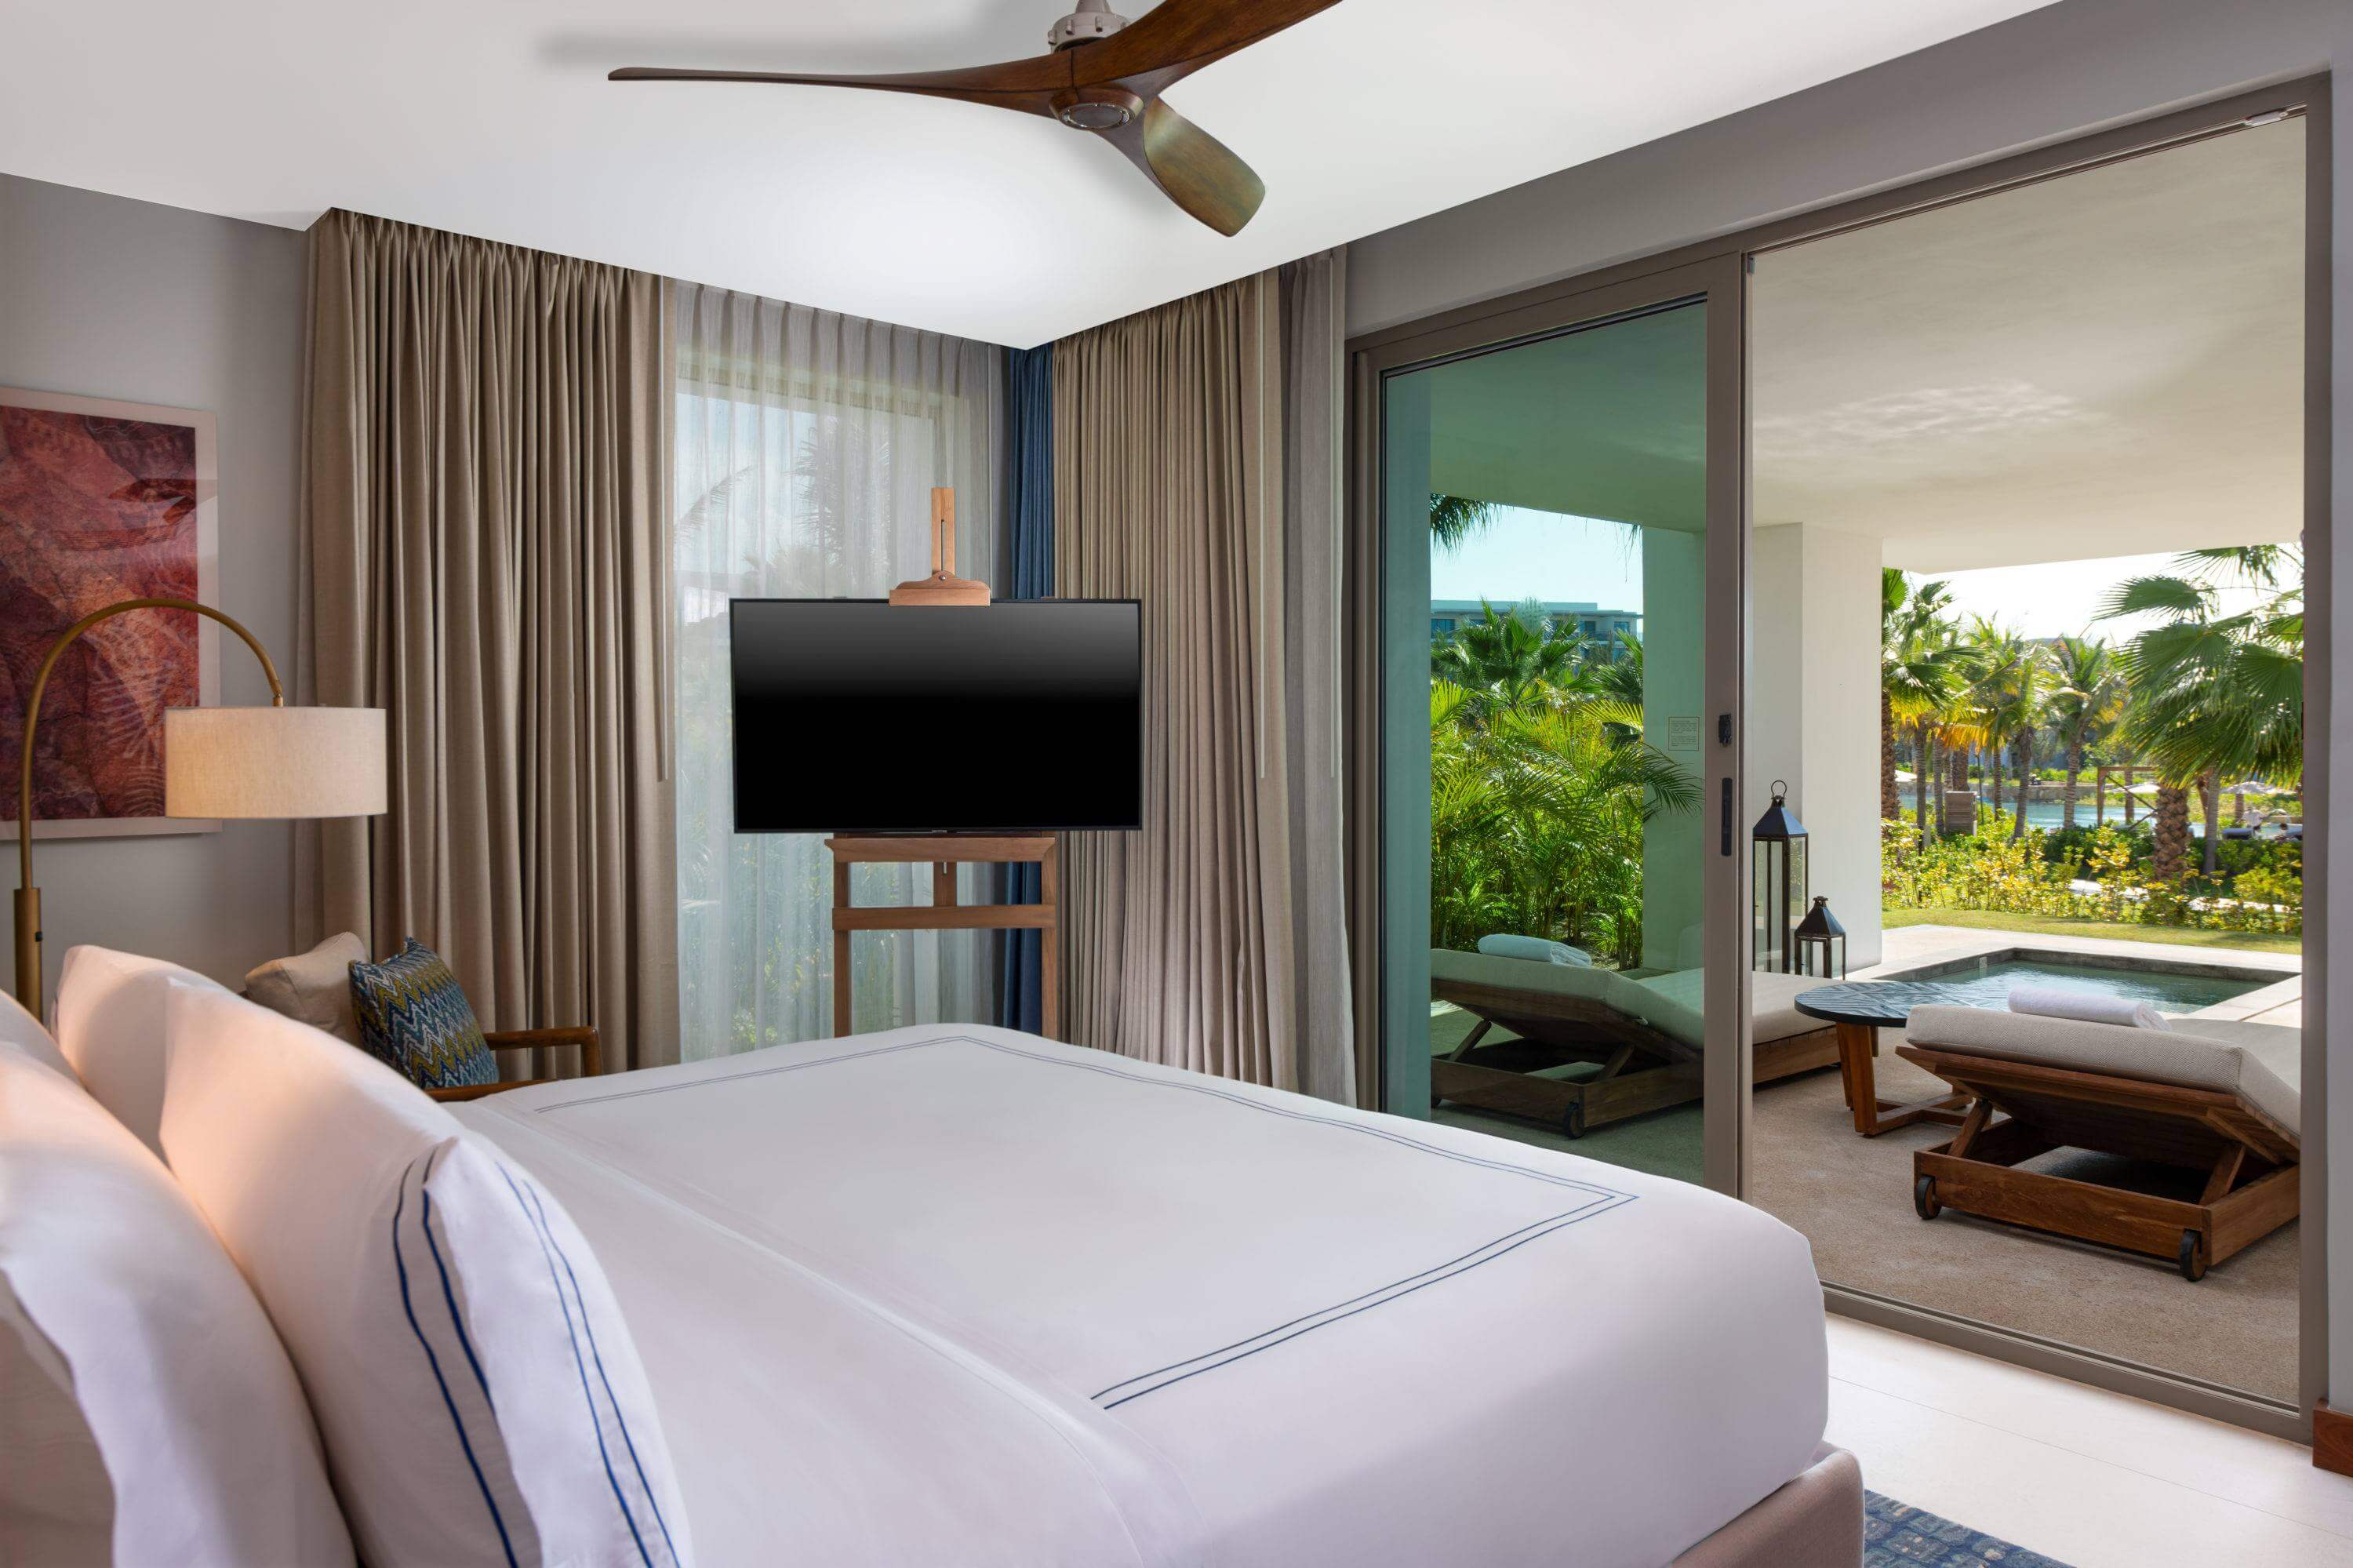 Una habitación de hotel con tv, lámpara con balcón con vista al río.